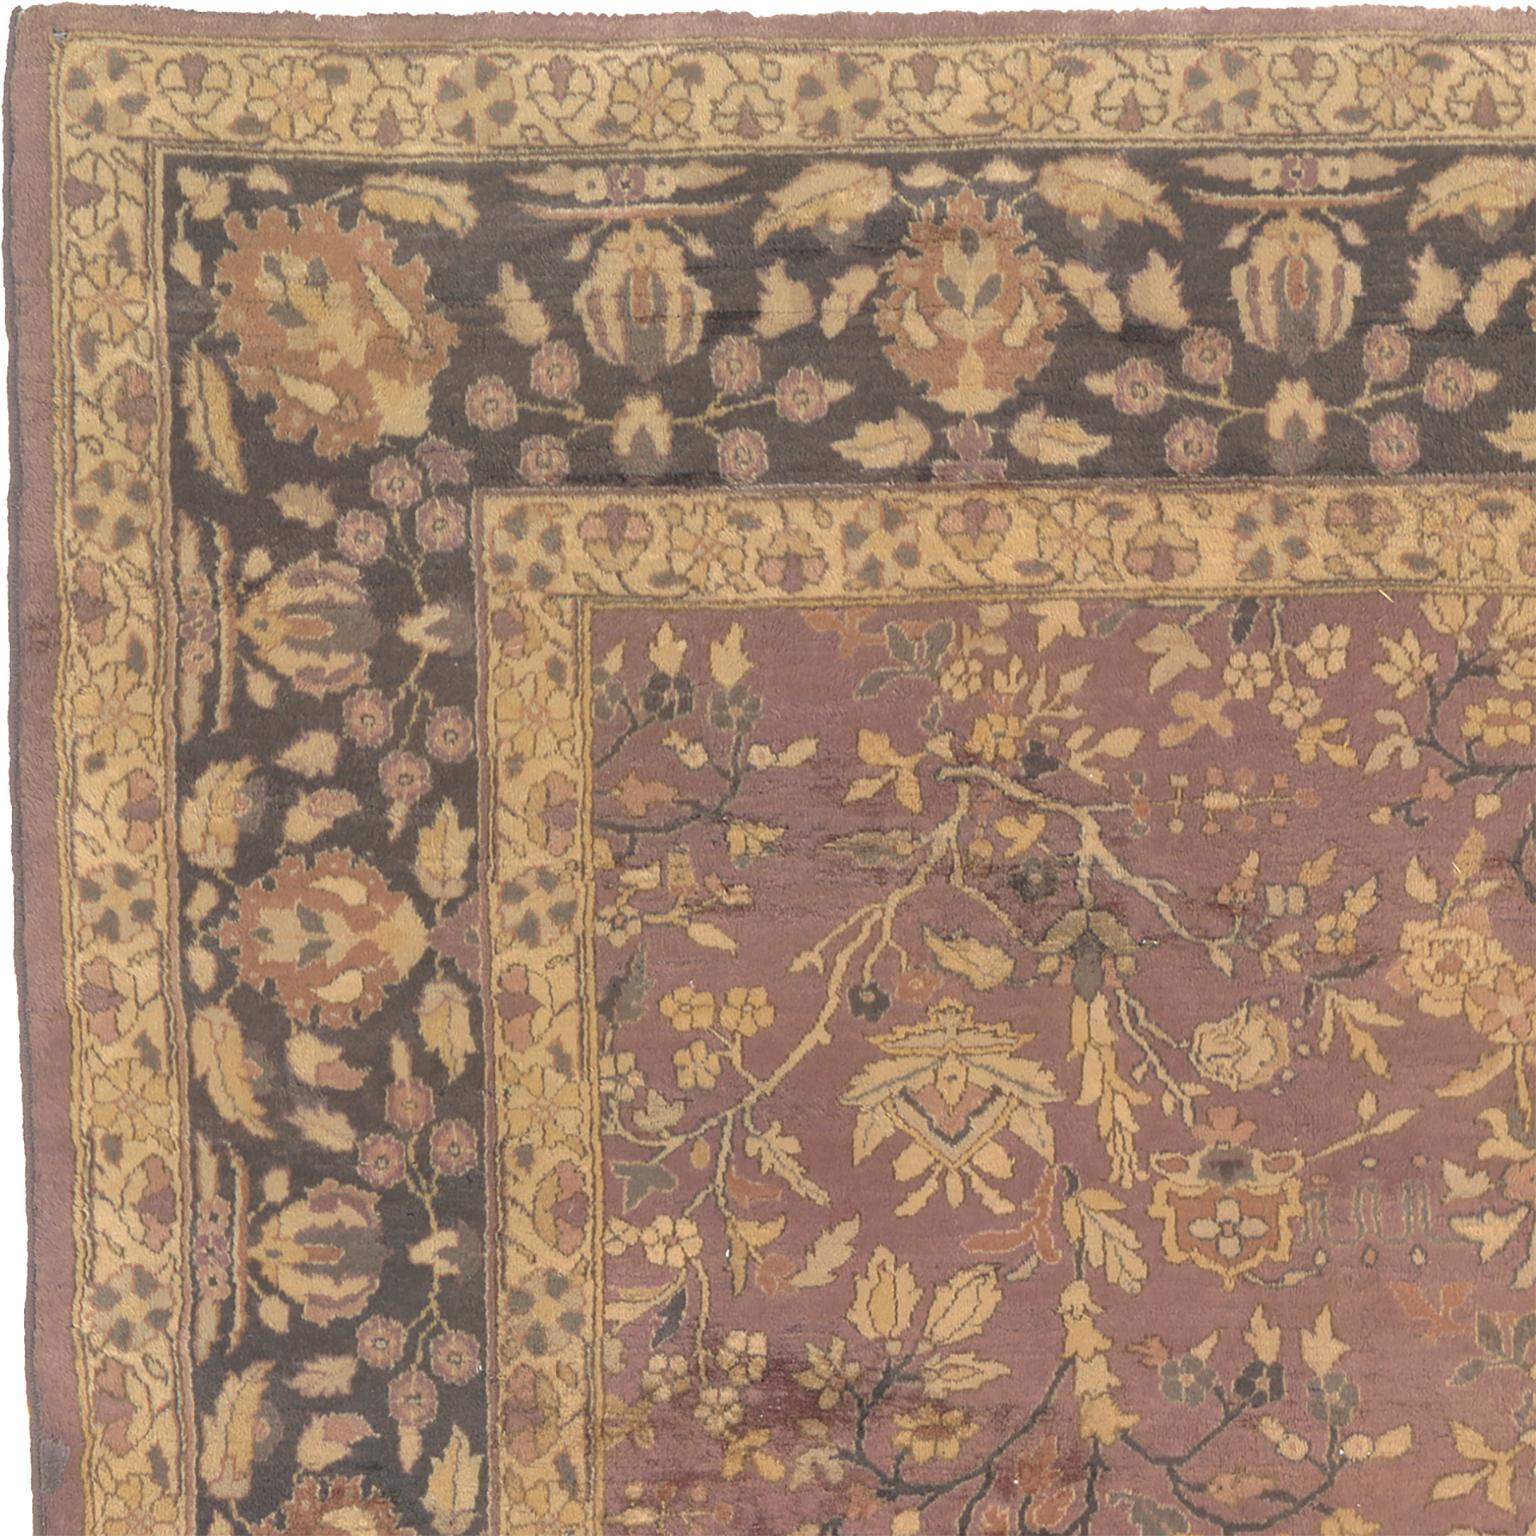 Ancien tapis indo-persan
Inde, vers 1920
Design géométrique
11'9